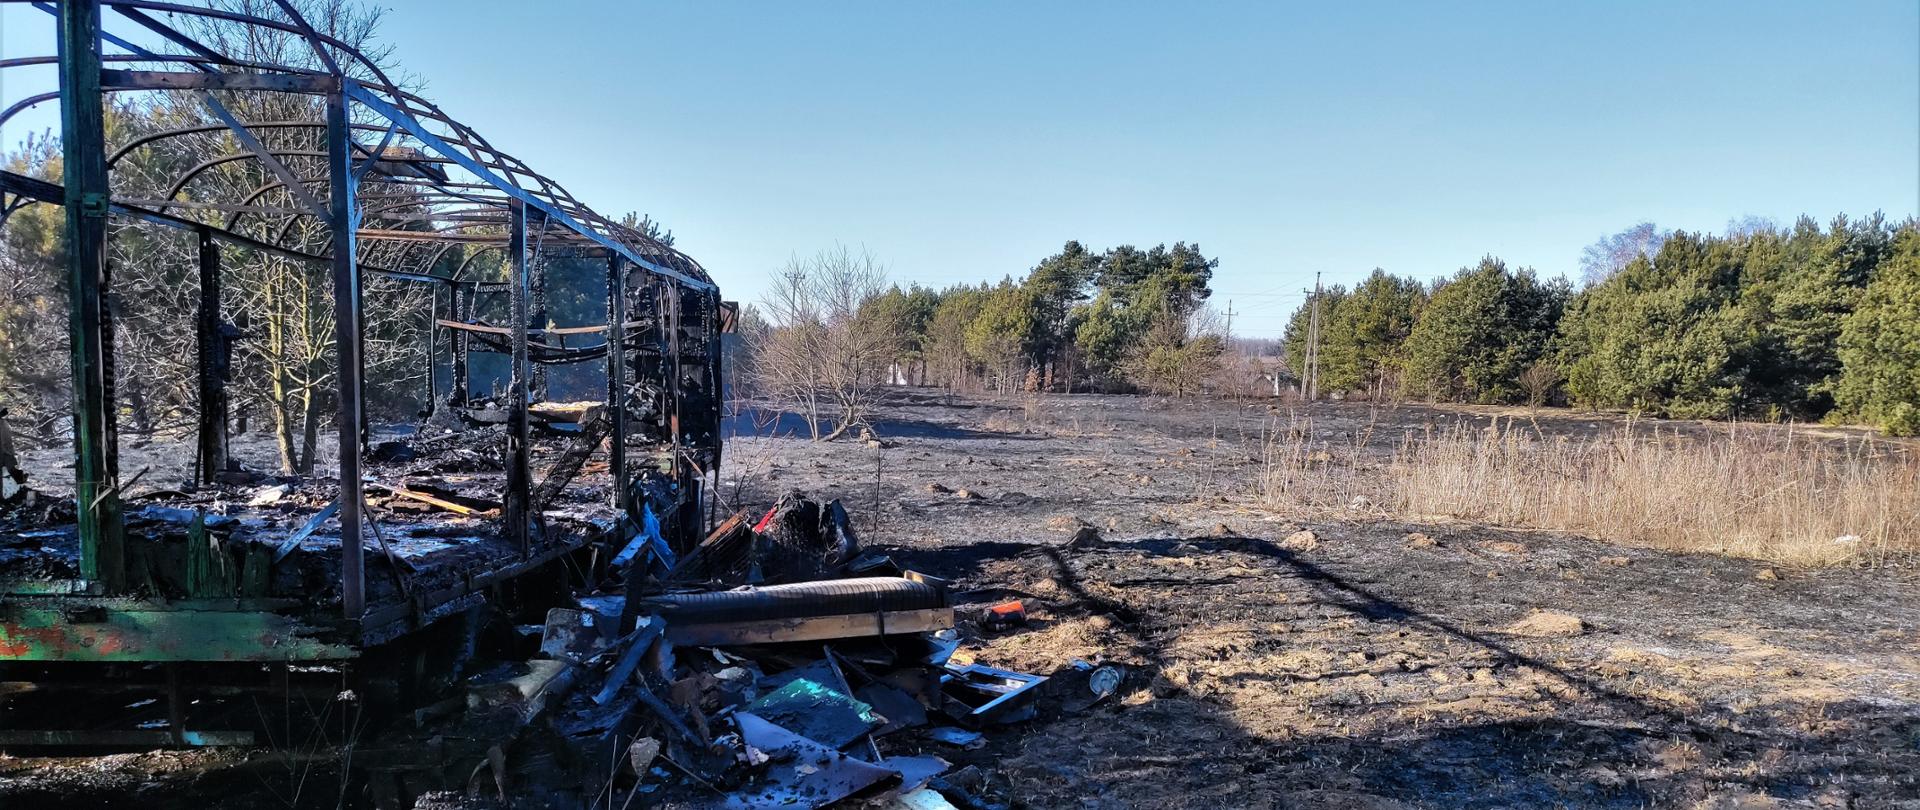 Na zdjęciu przedstawiono skutki pożaru traw na nieużytkach. Po prawej spalony barakowóz, z którego został jedynie stalowy szkielet, a lewa strona to wypalona trawa.